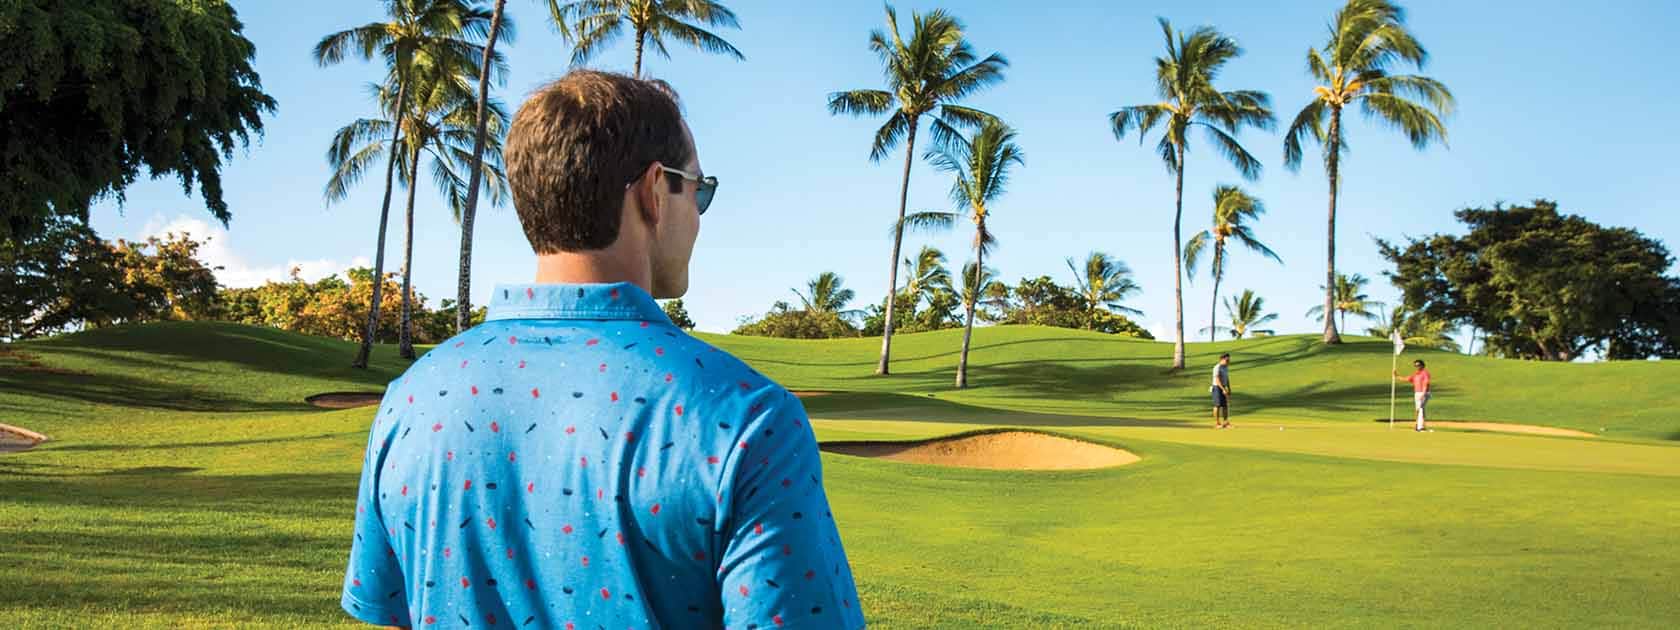 uomo con camicia elegante blu testurizzata in piedi in un campo da golf con palme rivolte verso gli altri golfisti